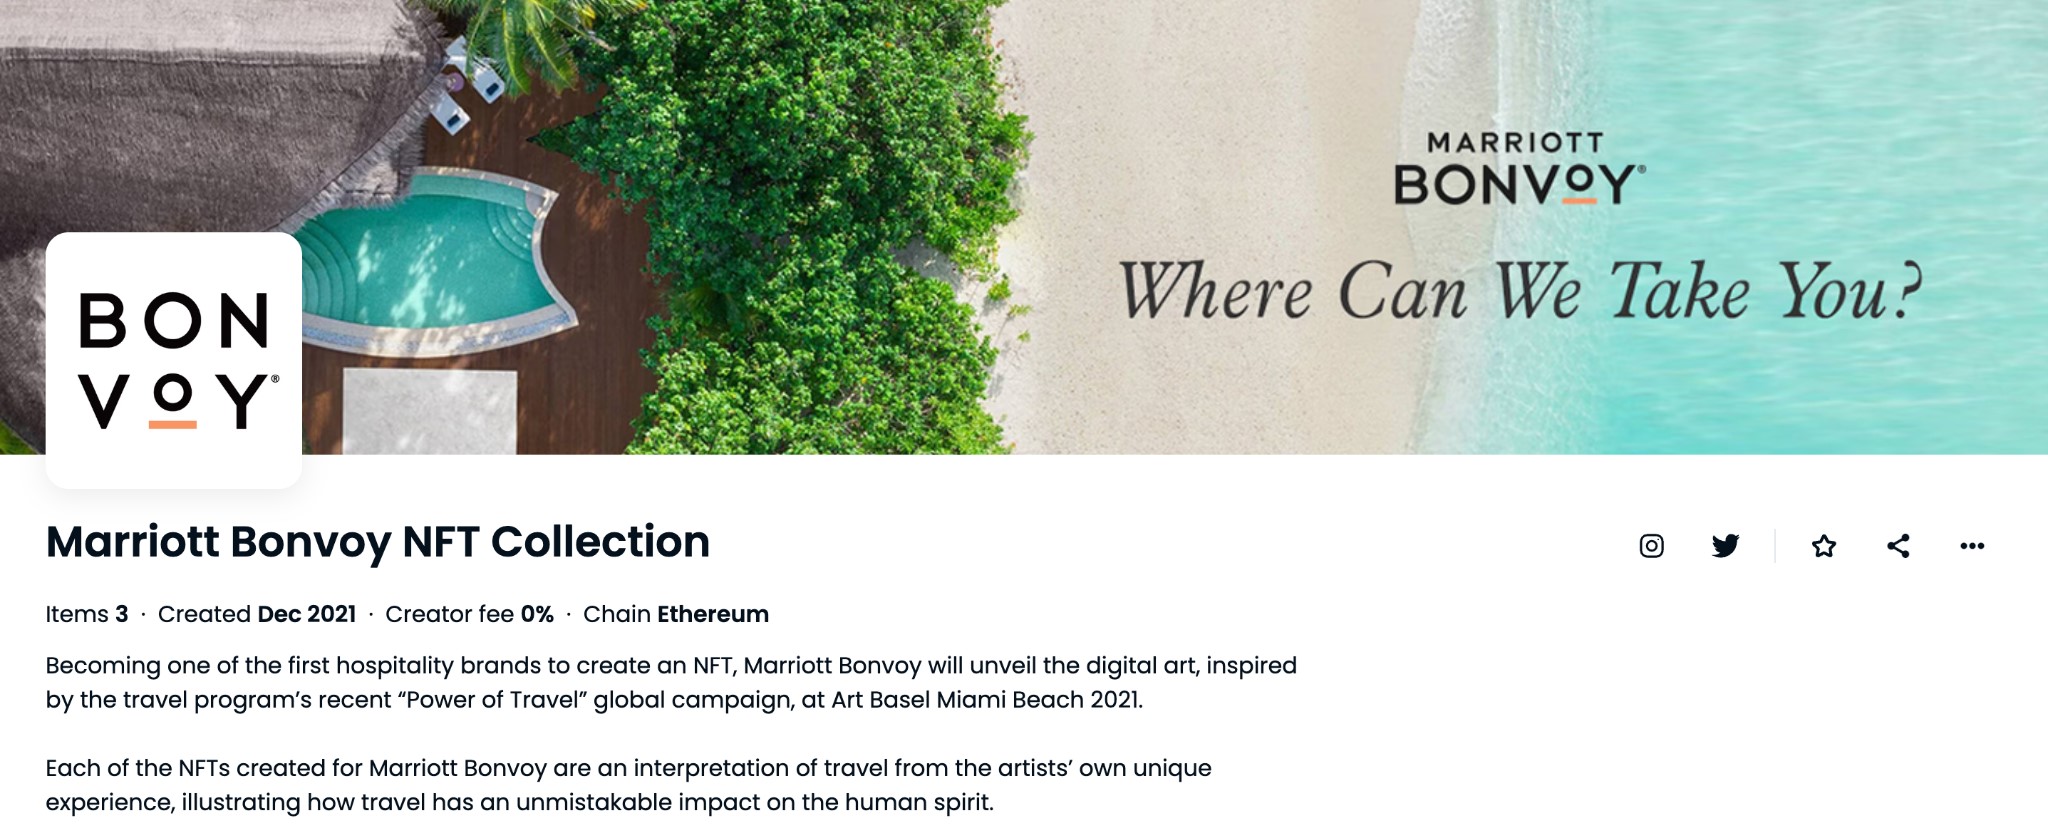 Marriott's Bonvoy NFT Collection description page